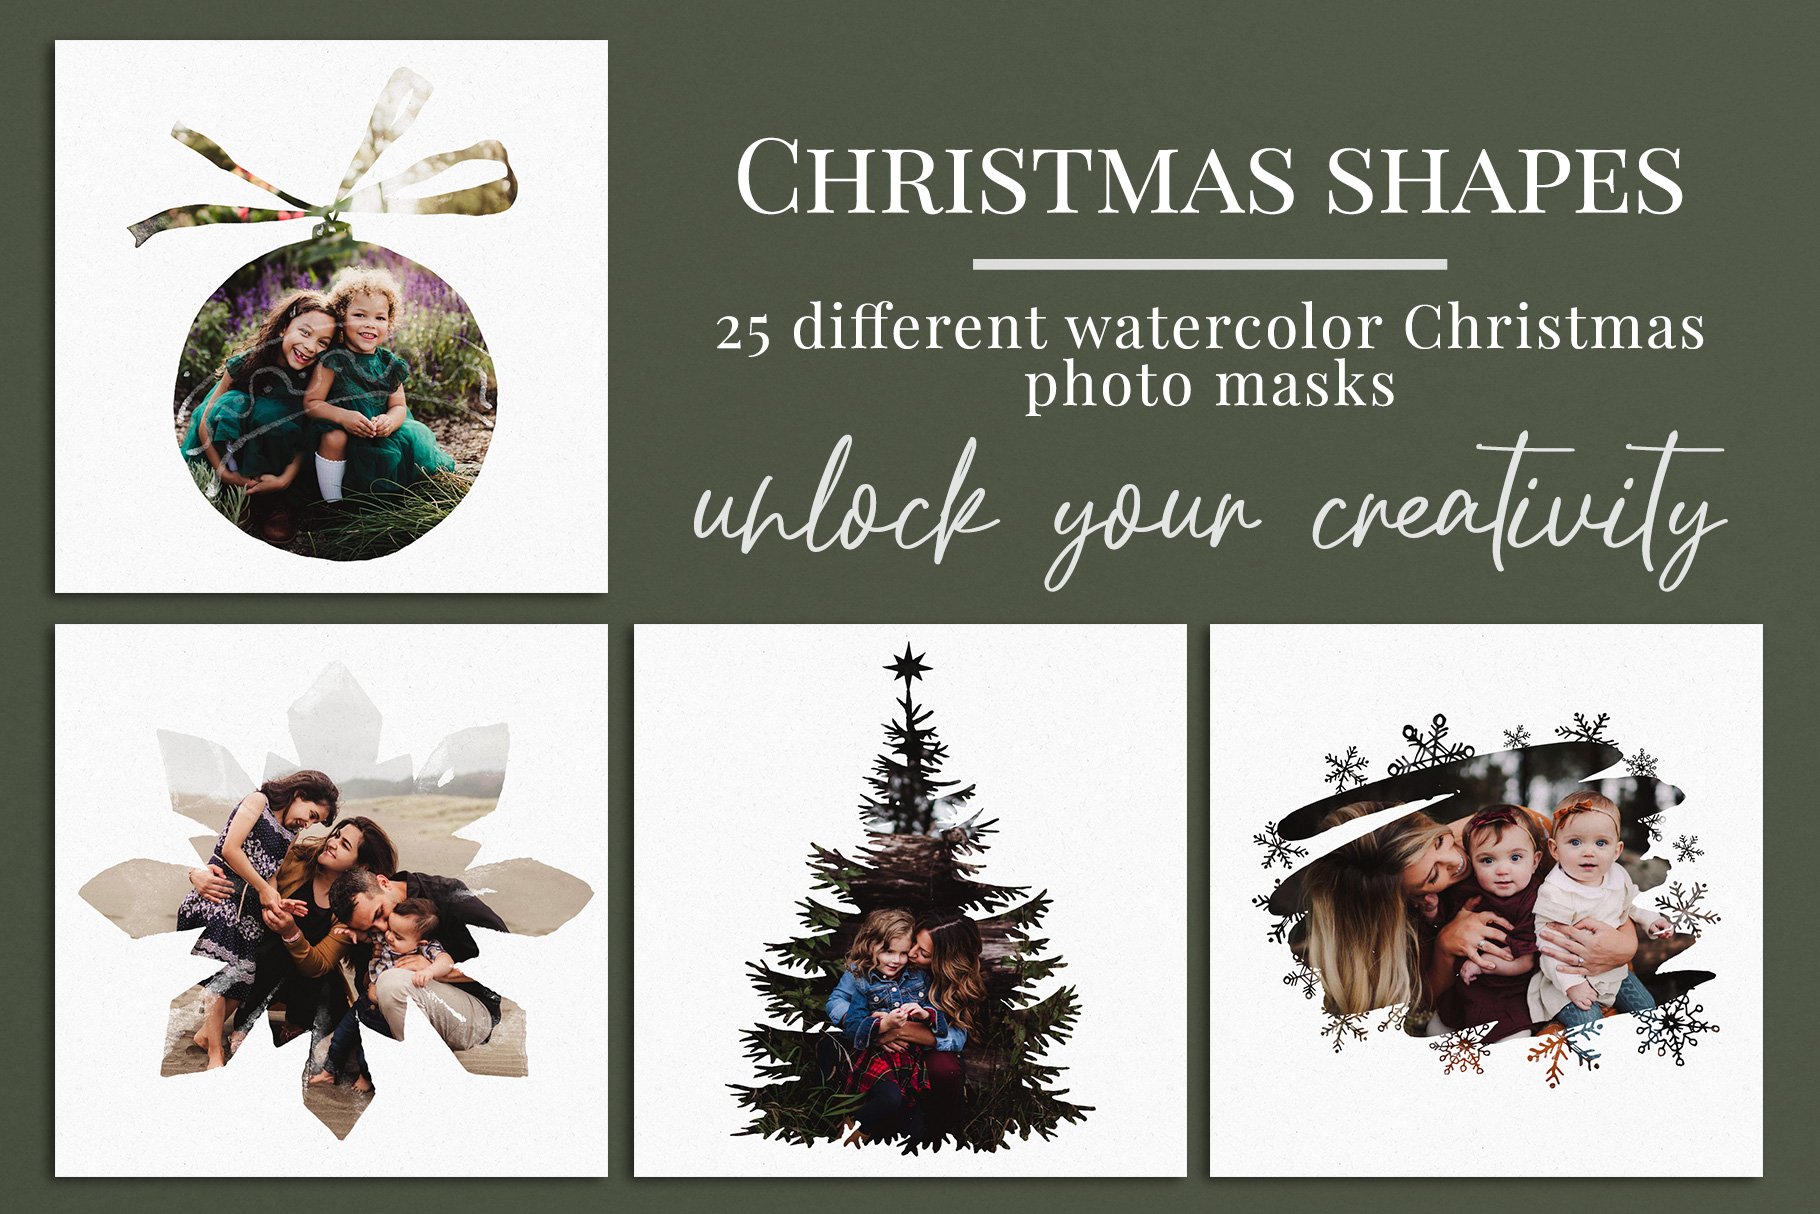 Christmas shapes photo maskscover image.